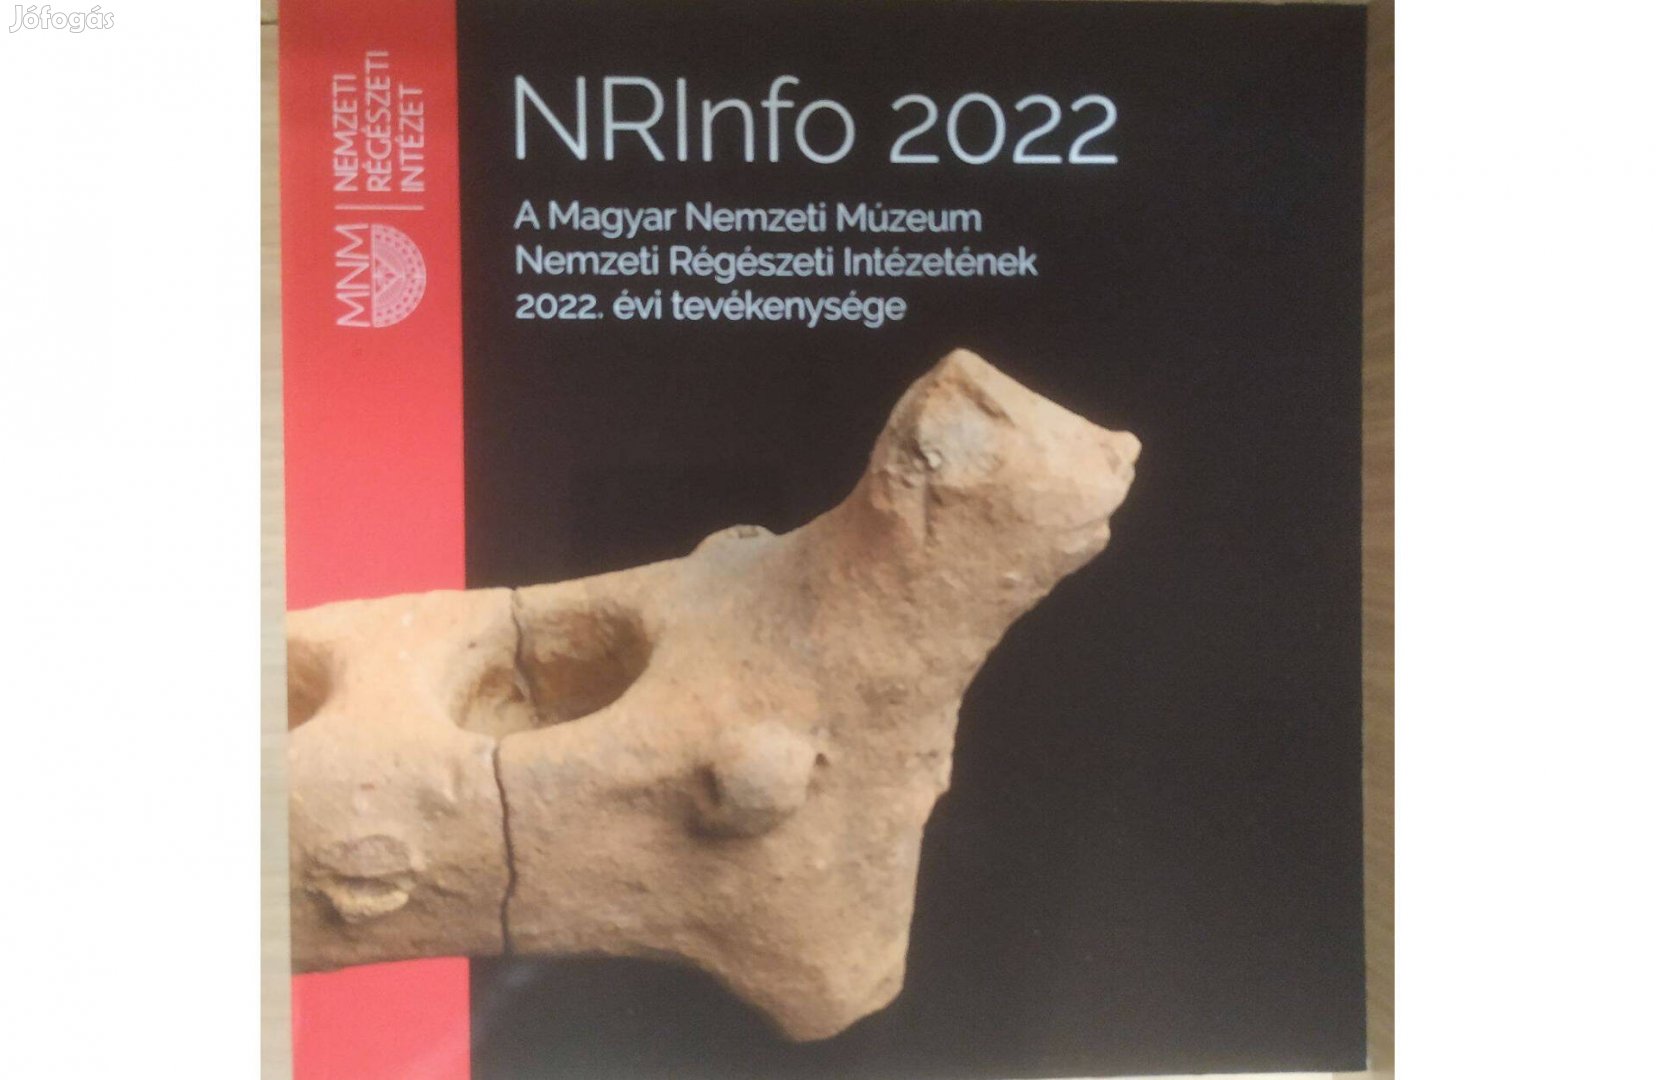 A Magyar Nemzeti Múzeum Nemzeti Régészeti Intézetének 2022 évi